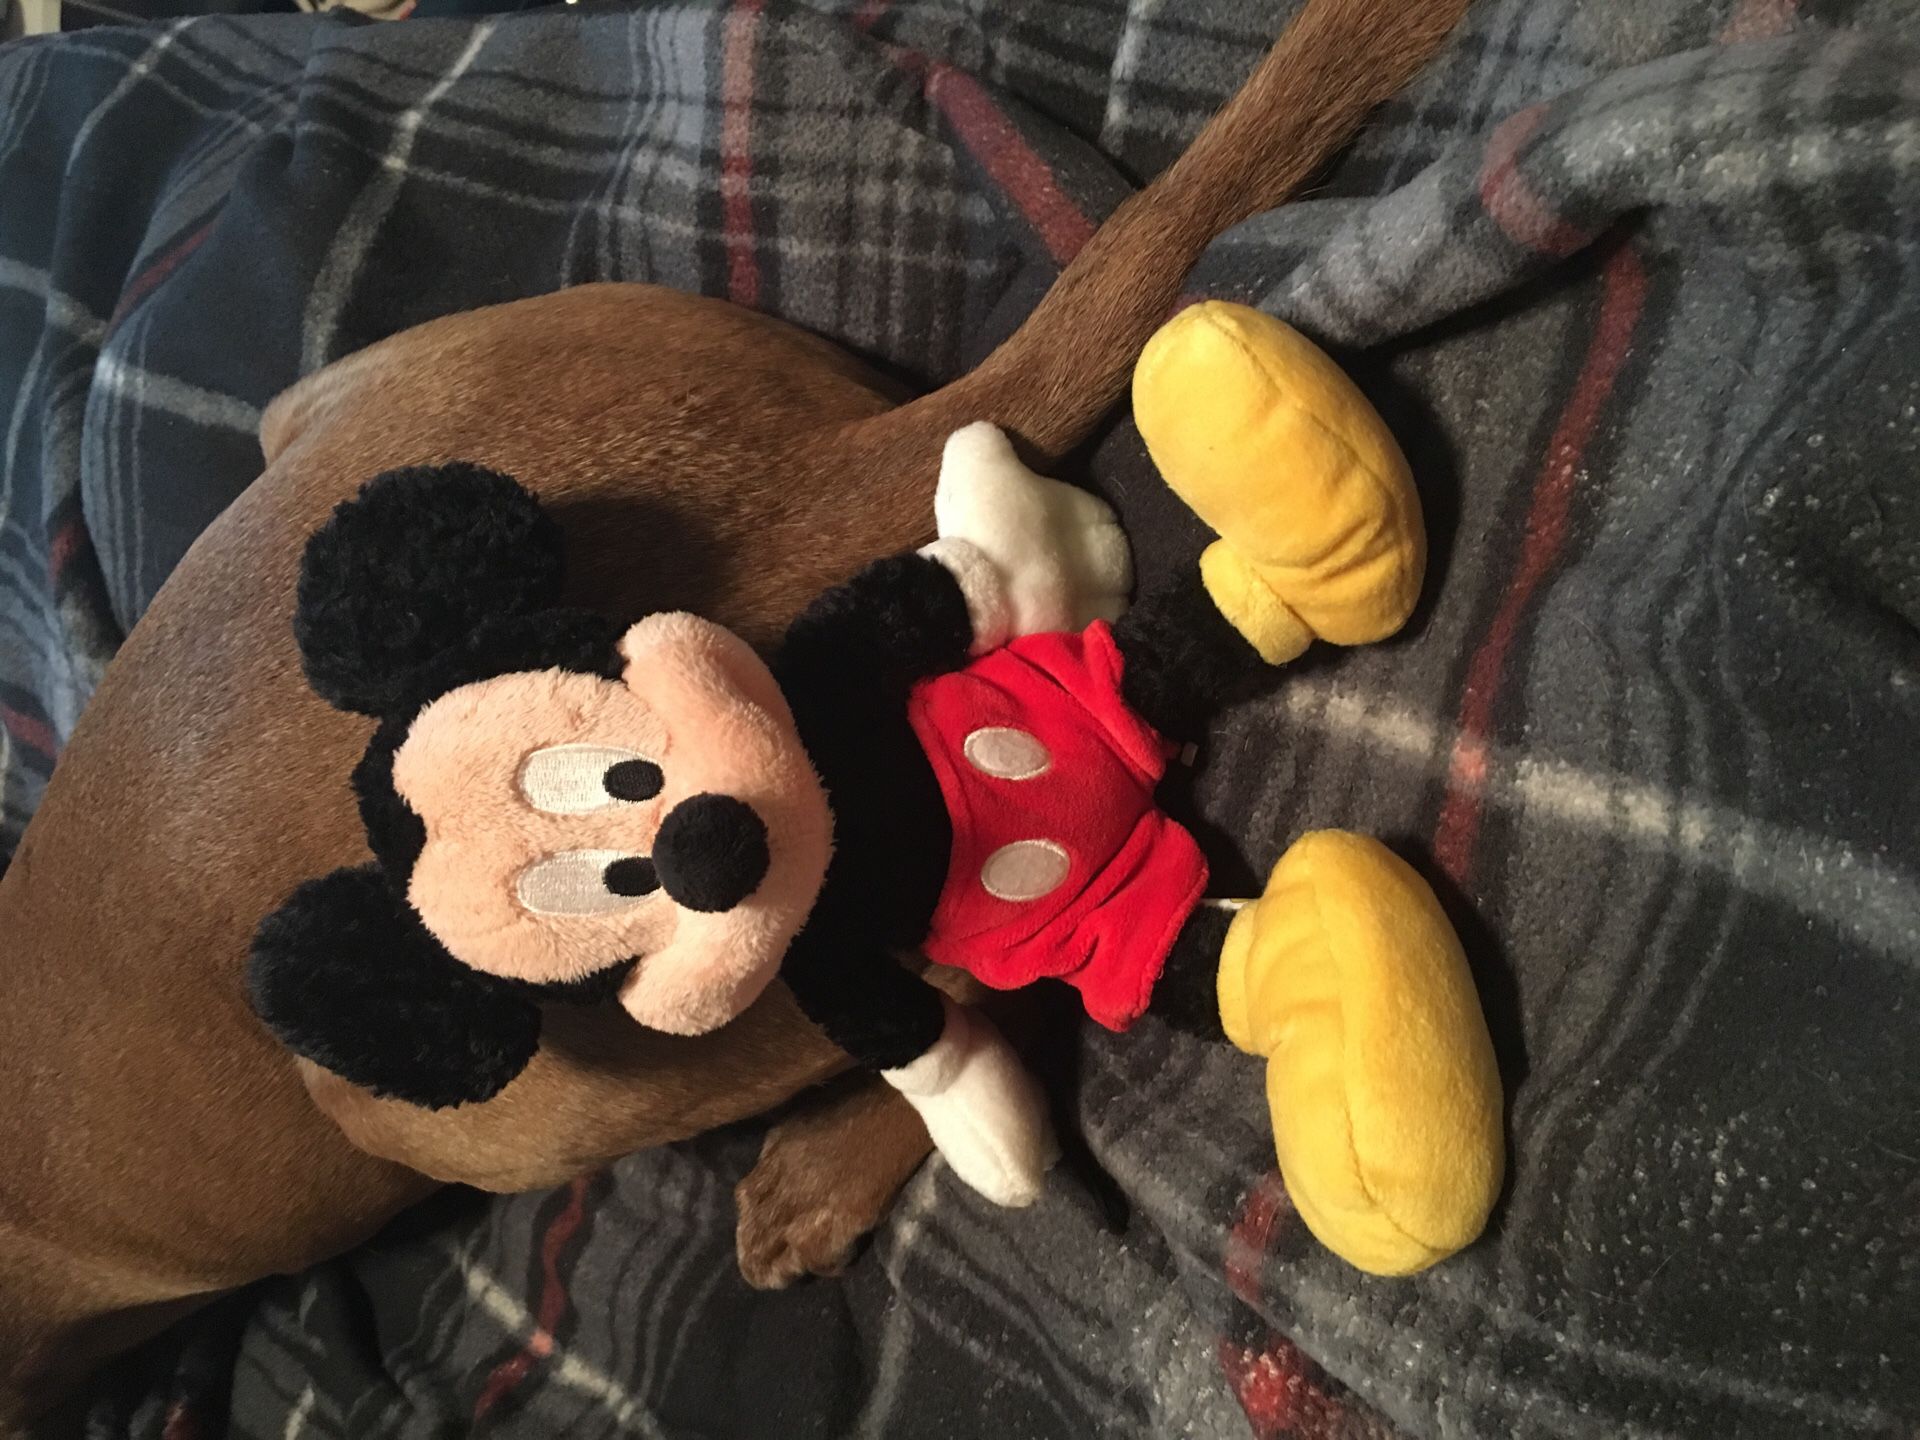 Disney’s Mickey and Minnie dolls